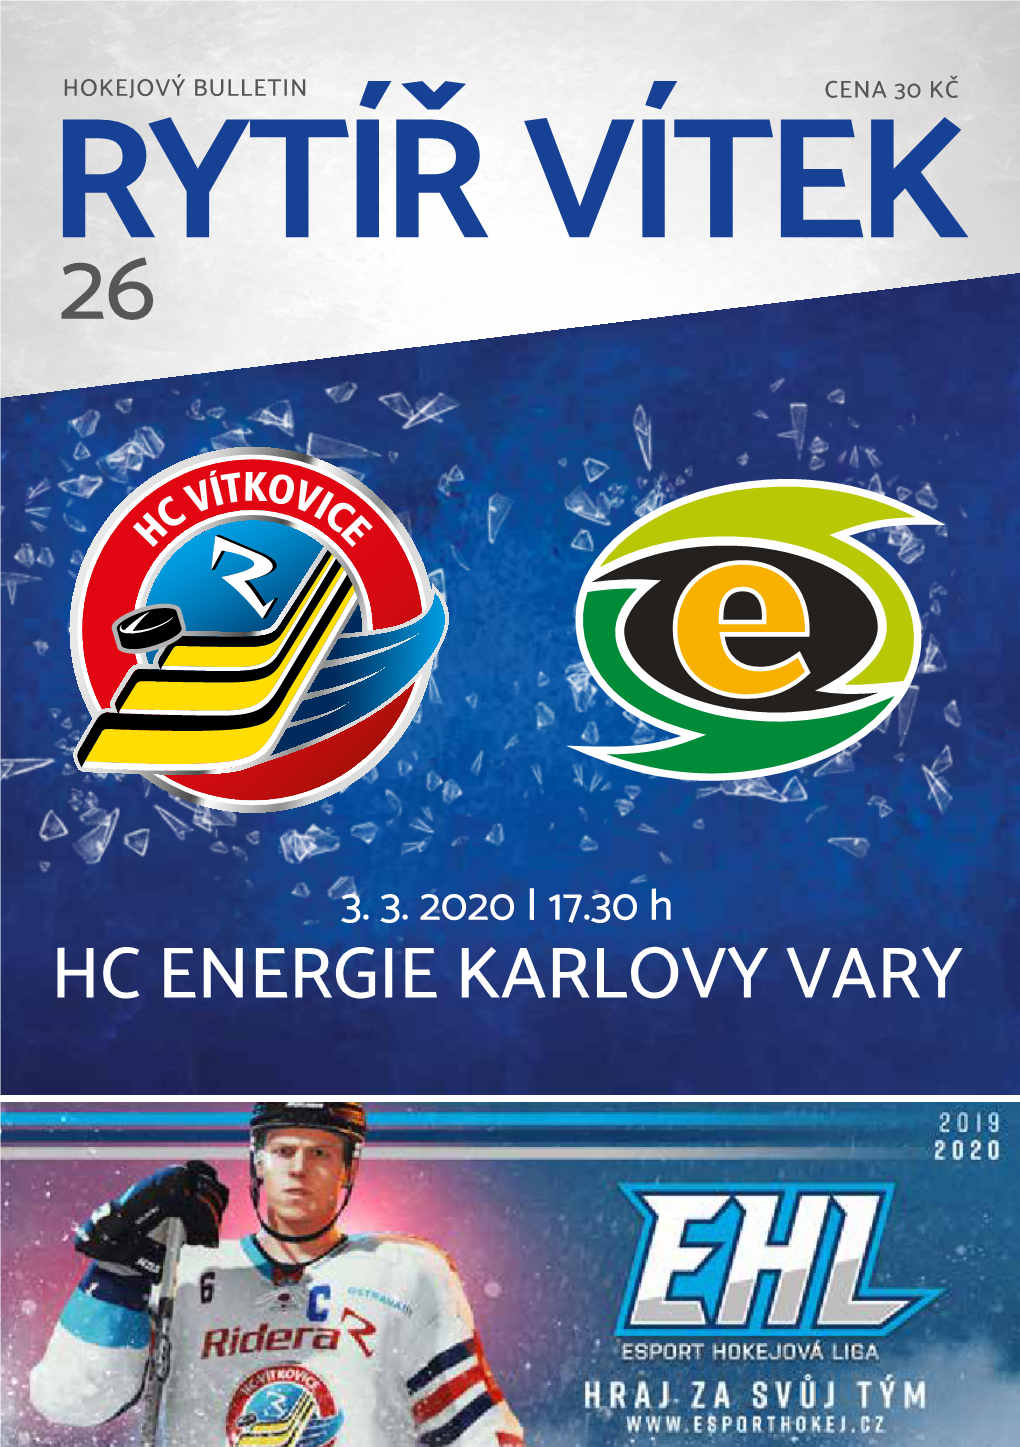 Hc Energie Karlovy Vary